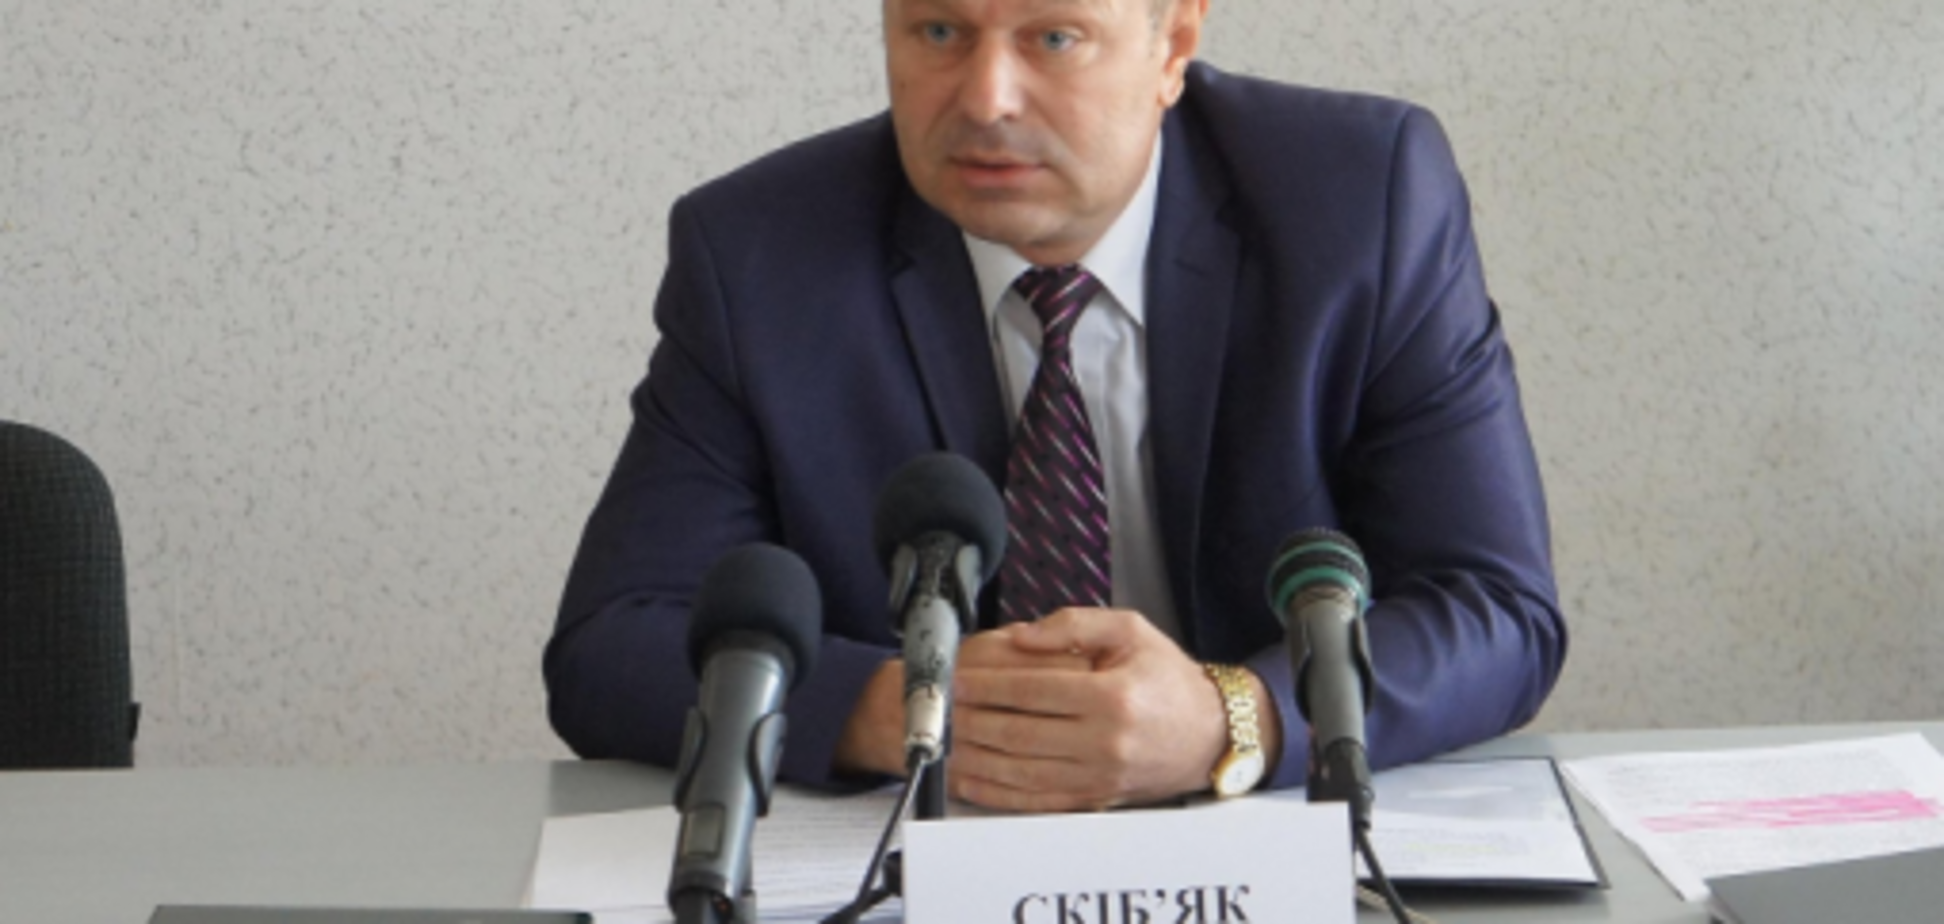 'Гидко все це': міністр Януковича отримав посаду в антикорупційному комітеті